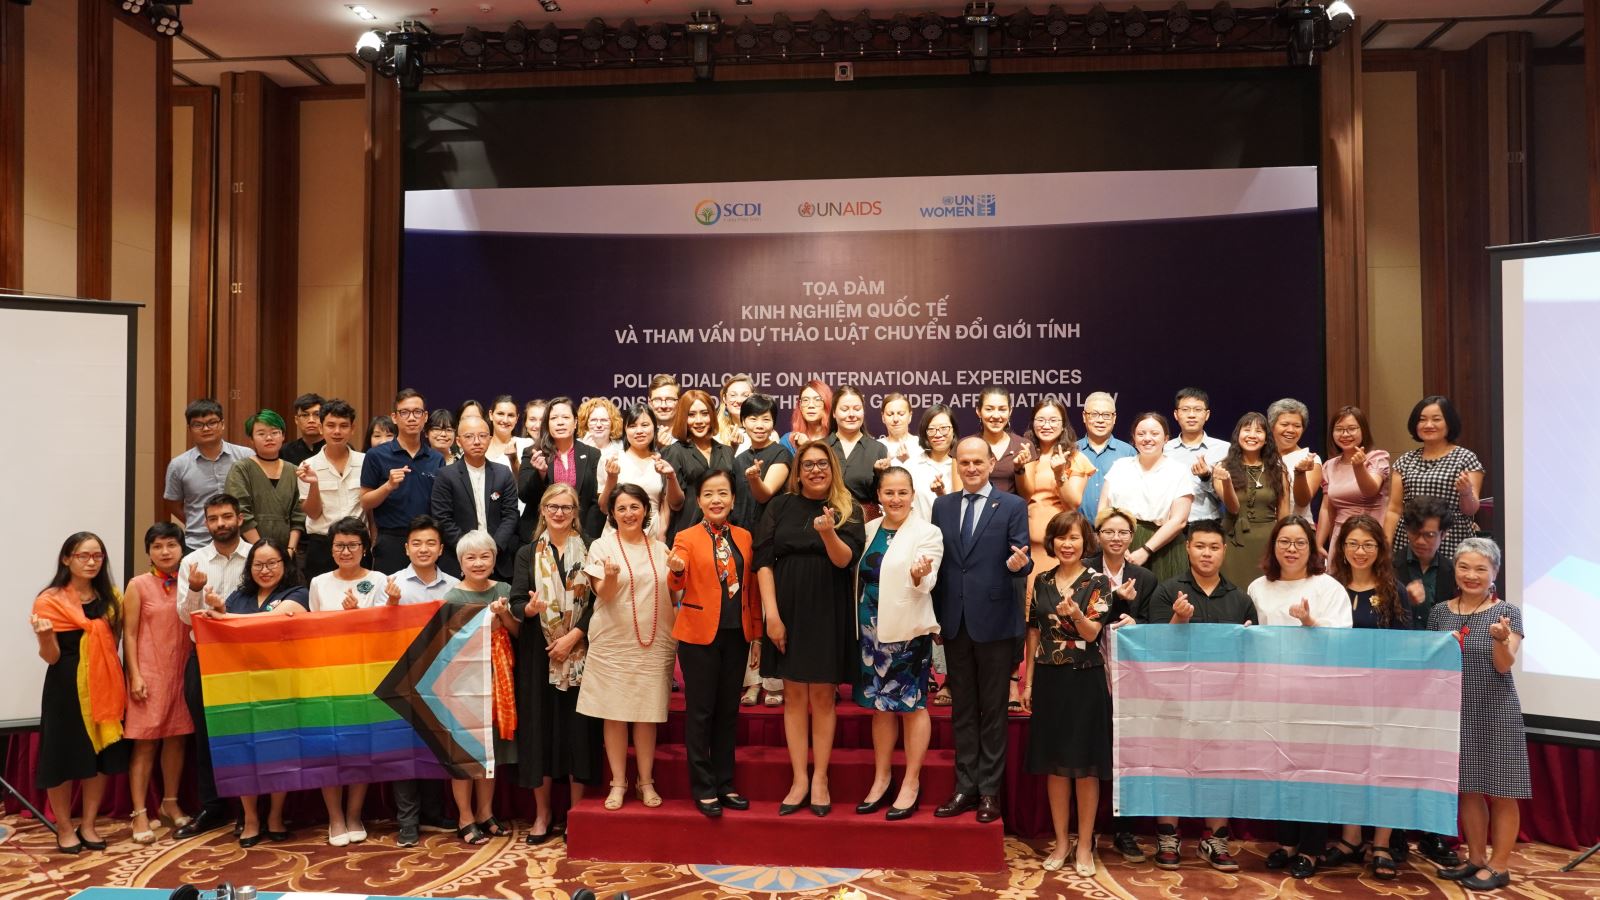 Tọa đàm kinh nghiệm quốc tế và tham vấn dự thảo luật chuyển đổi giới tính tại Hà Nội